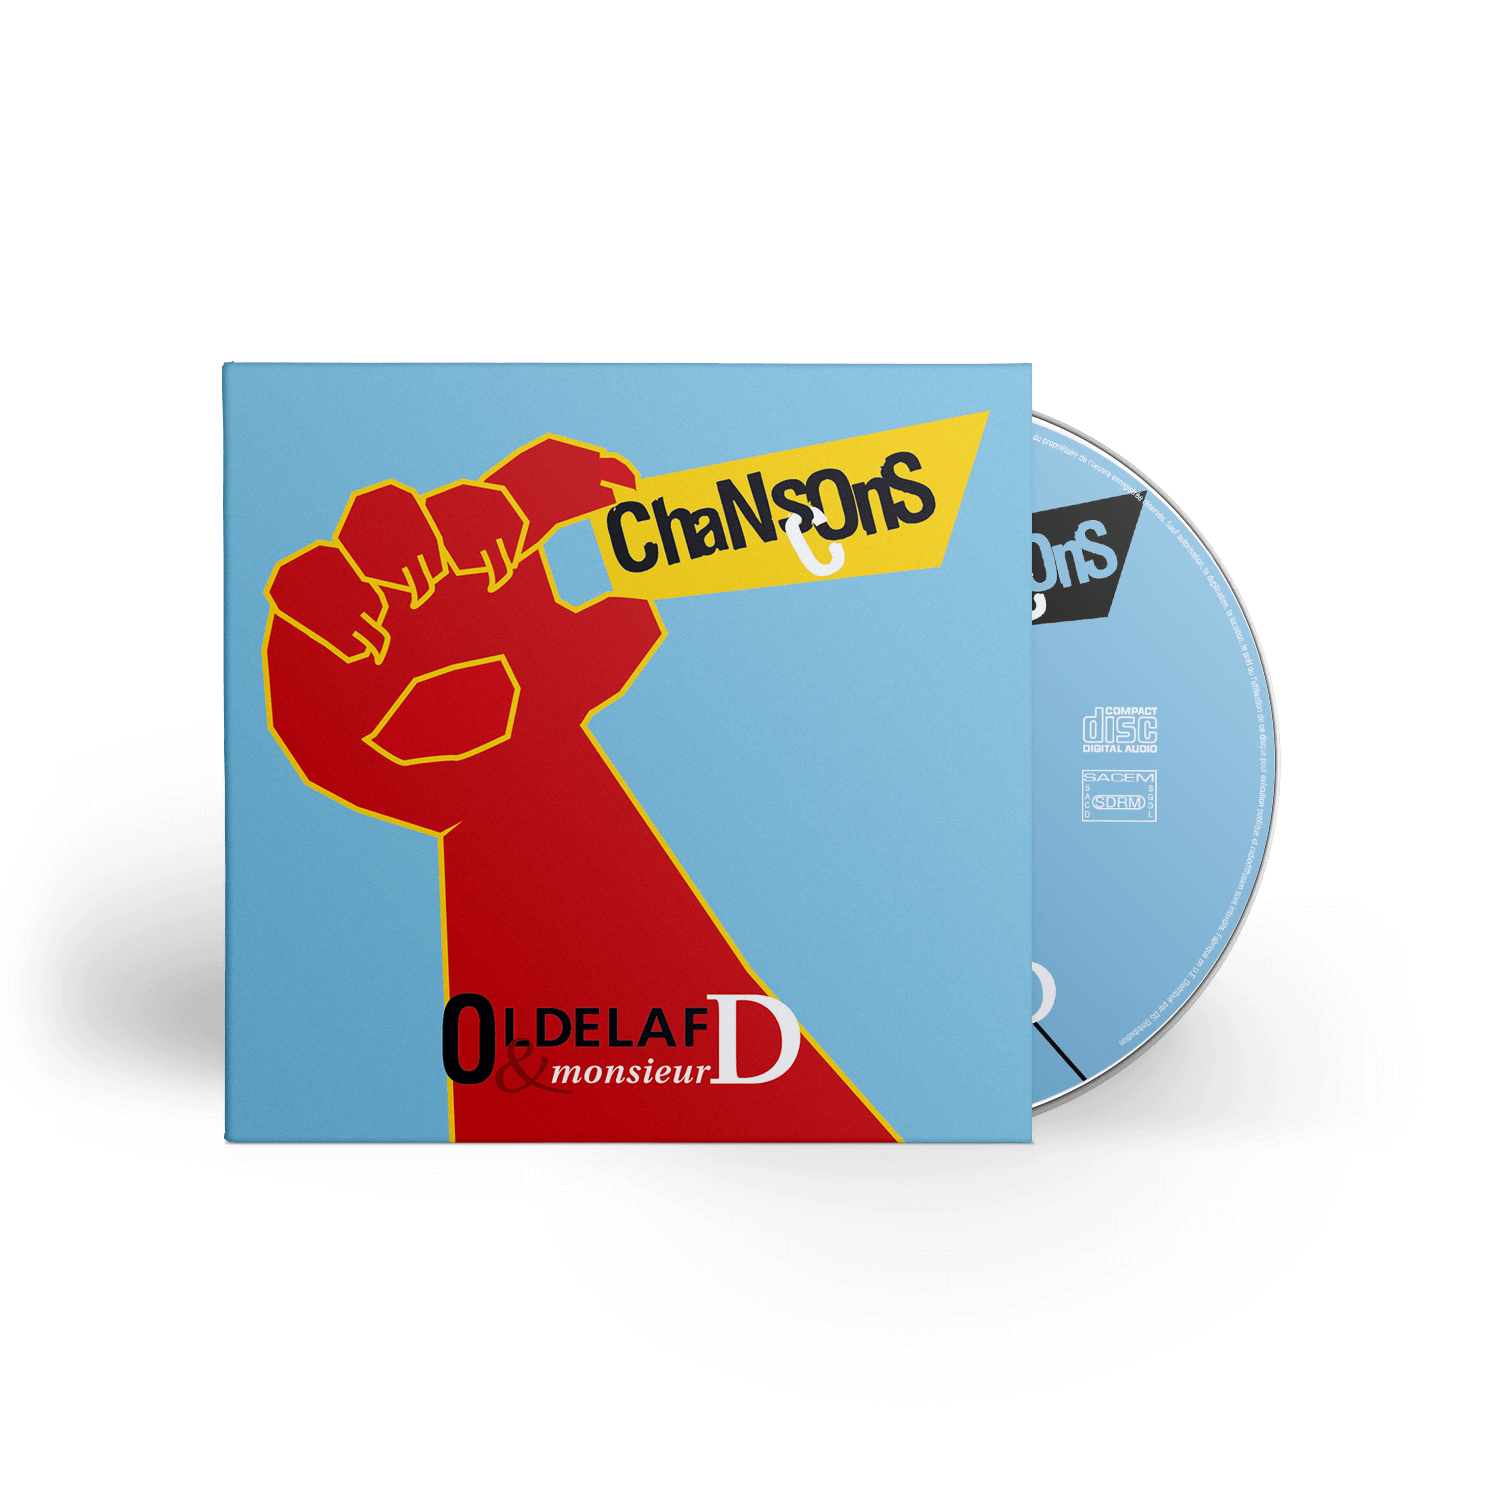 Oldelaf & Mr D. - Chansons cons - CD